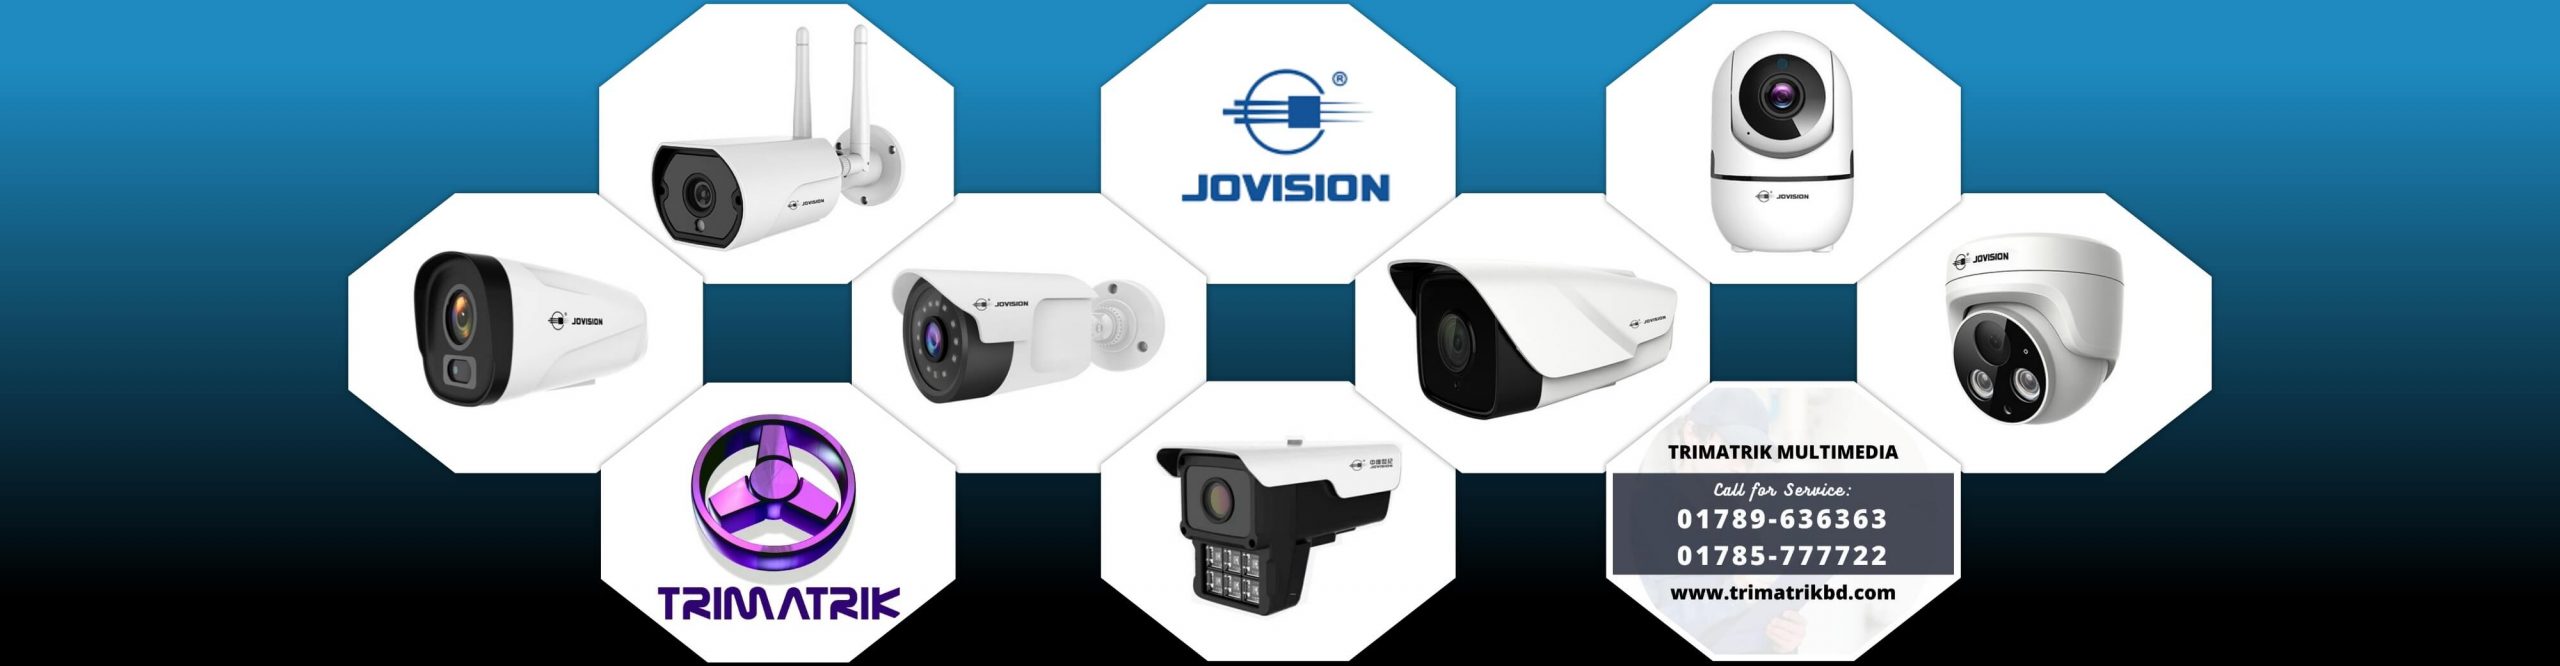 Jovision CCTV Camera in Bangladesh